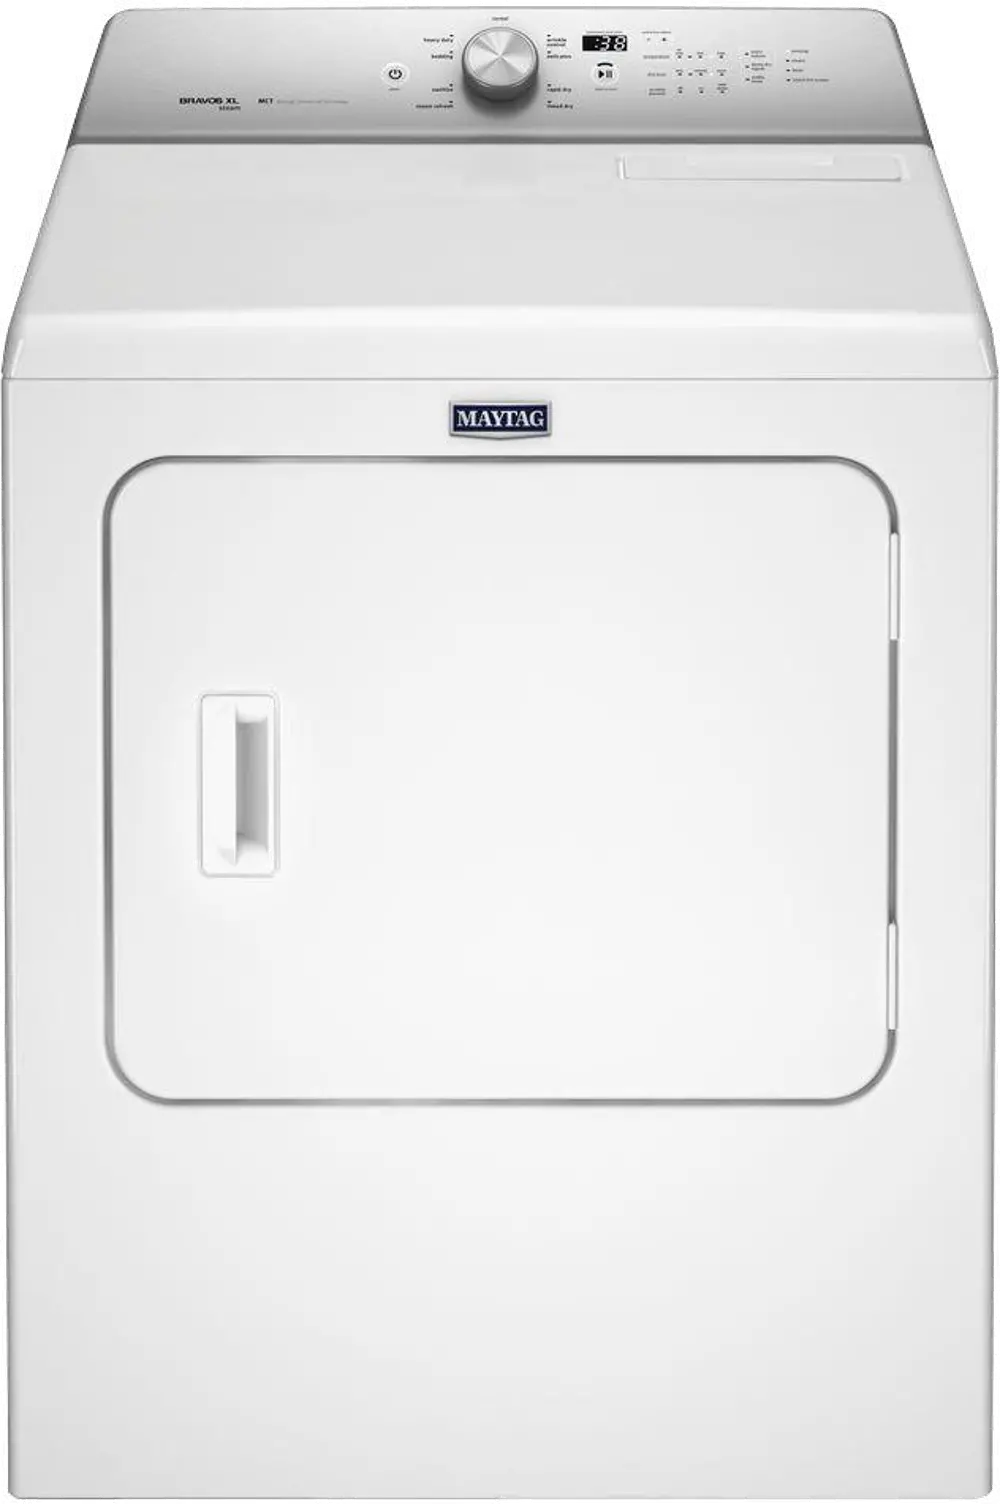 MEDB755DW Maytag 7.0 cu. ft. Electric Dryer - White-1